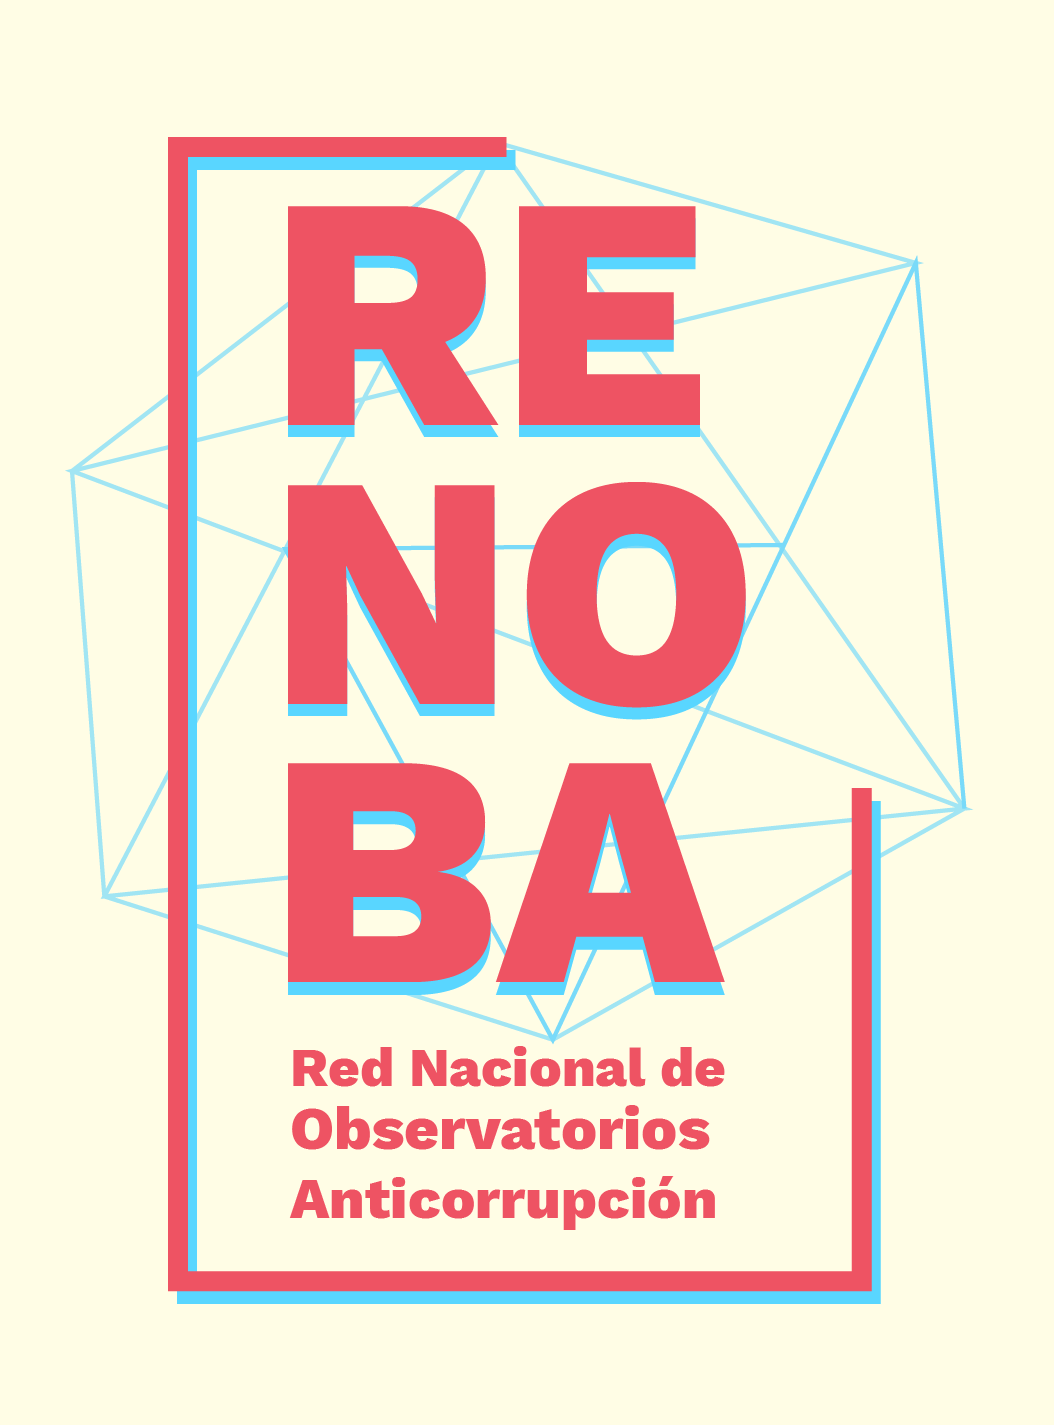 Renoba-logo-color.png